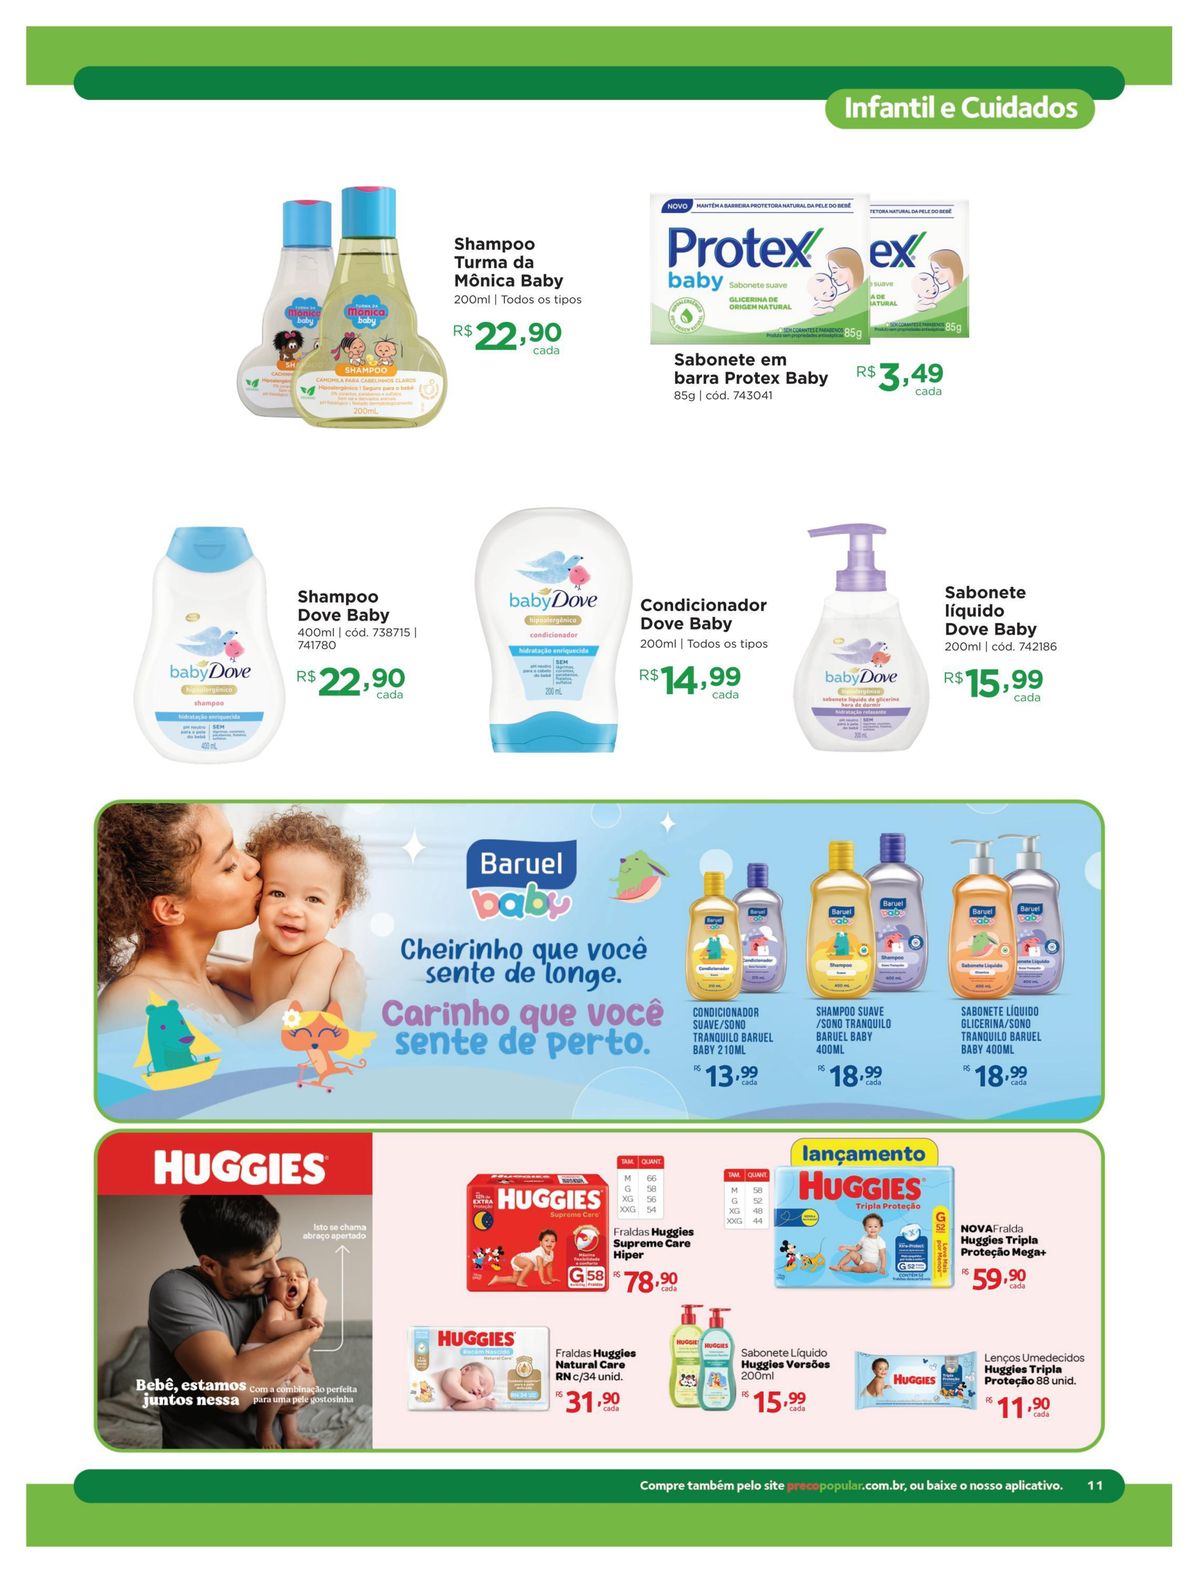 Shampoo Turma da Mônica Baby e Sabonete Protex Baby em promoção